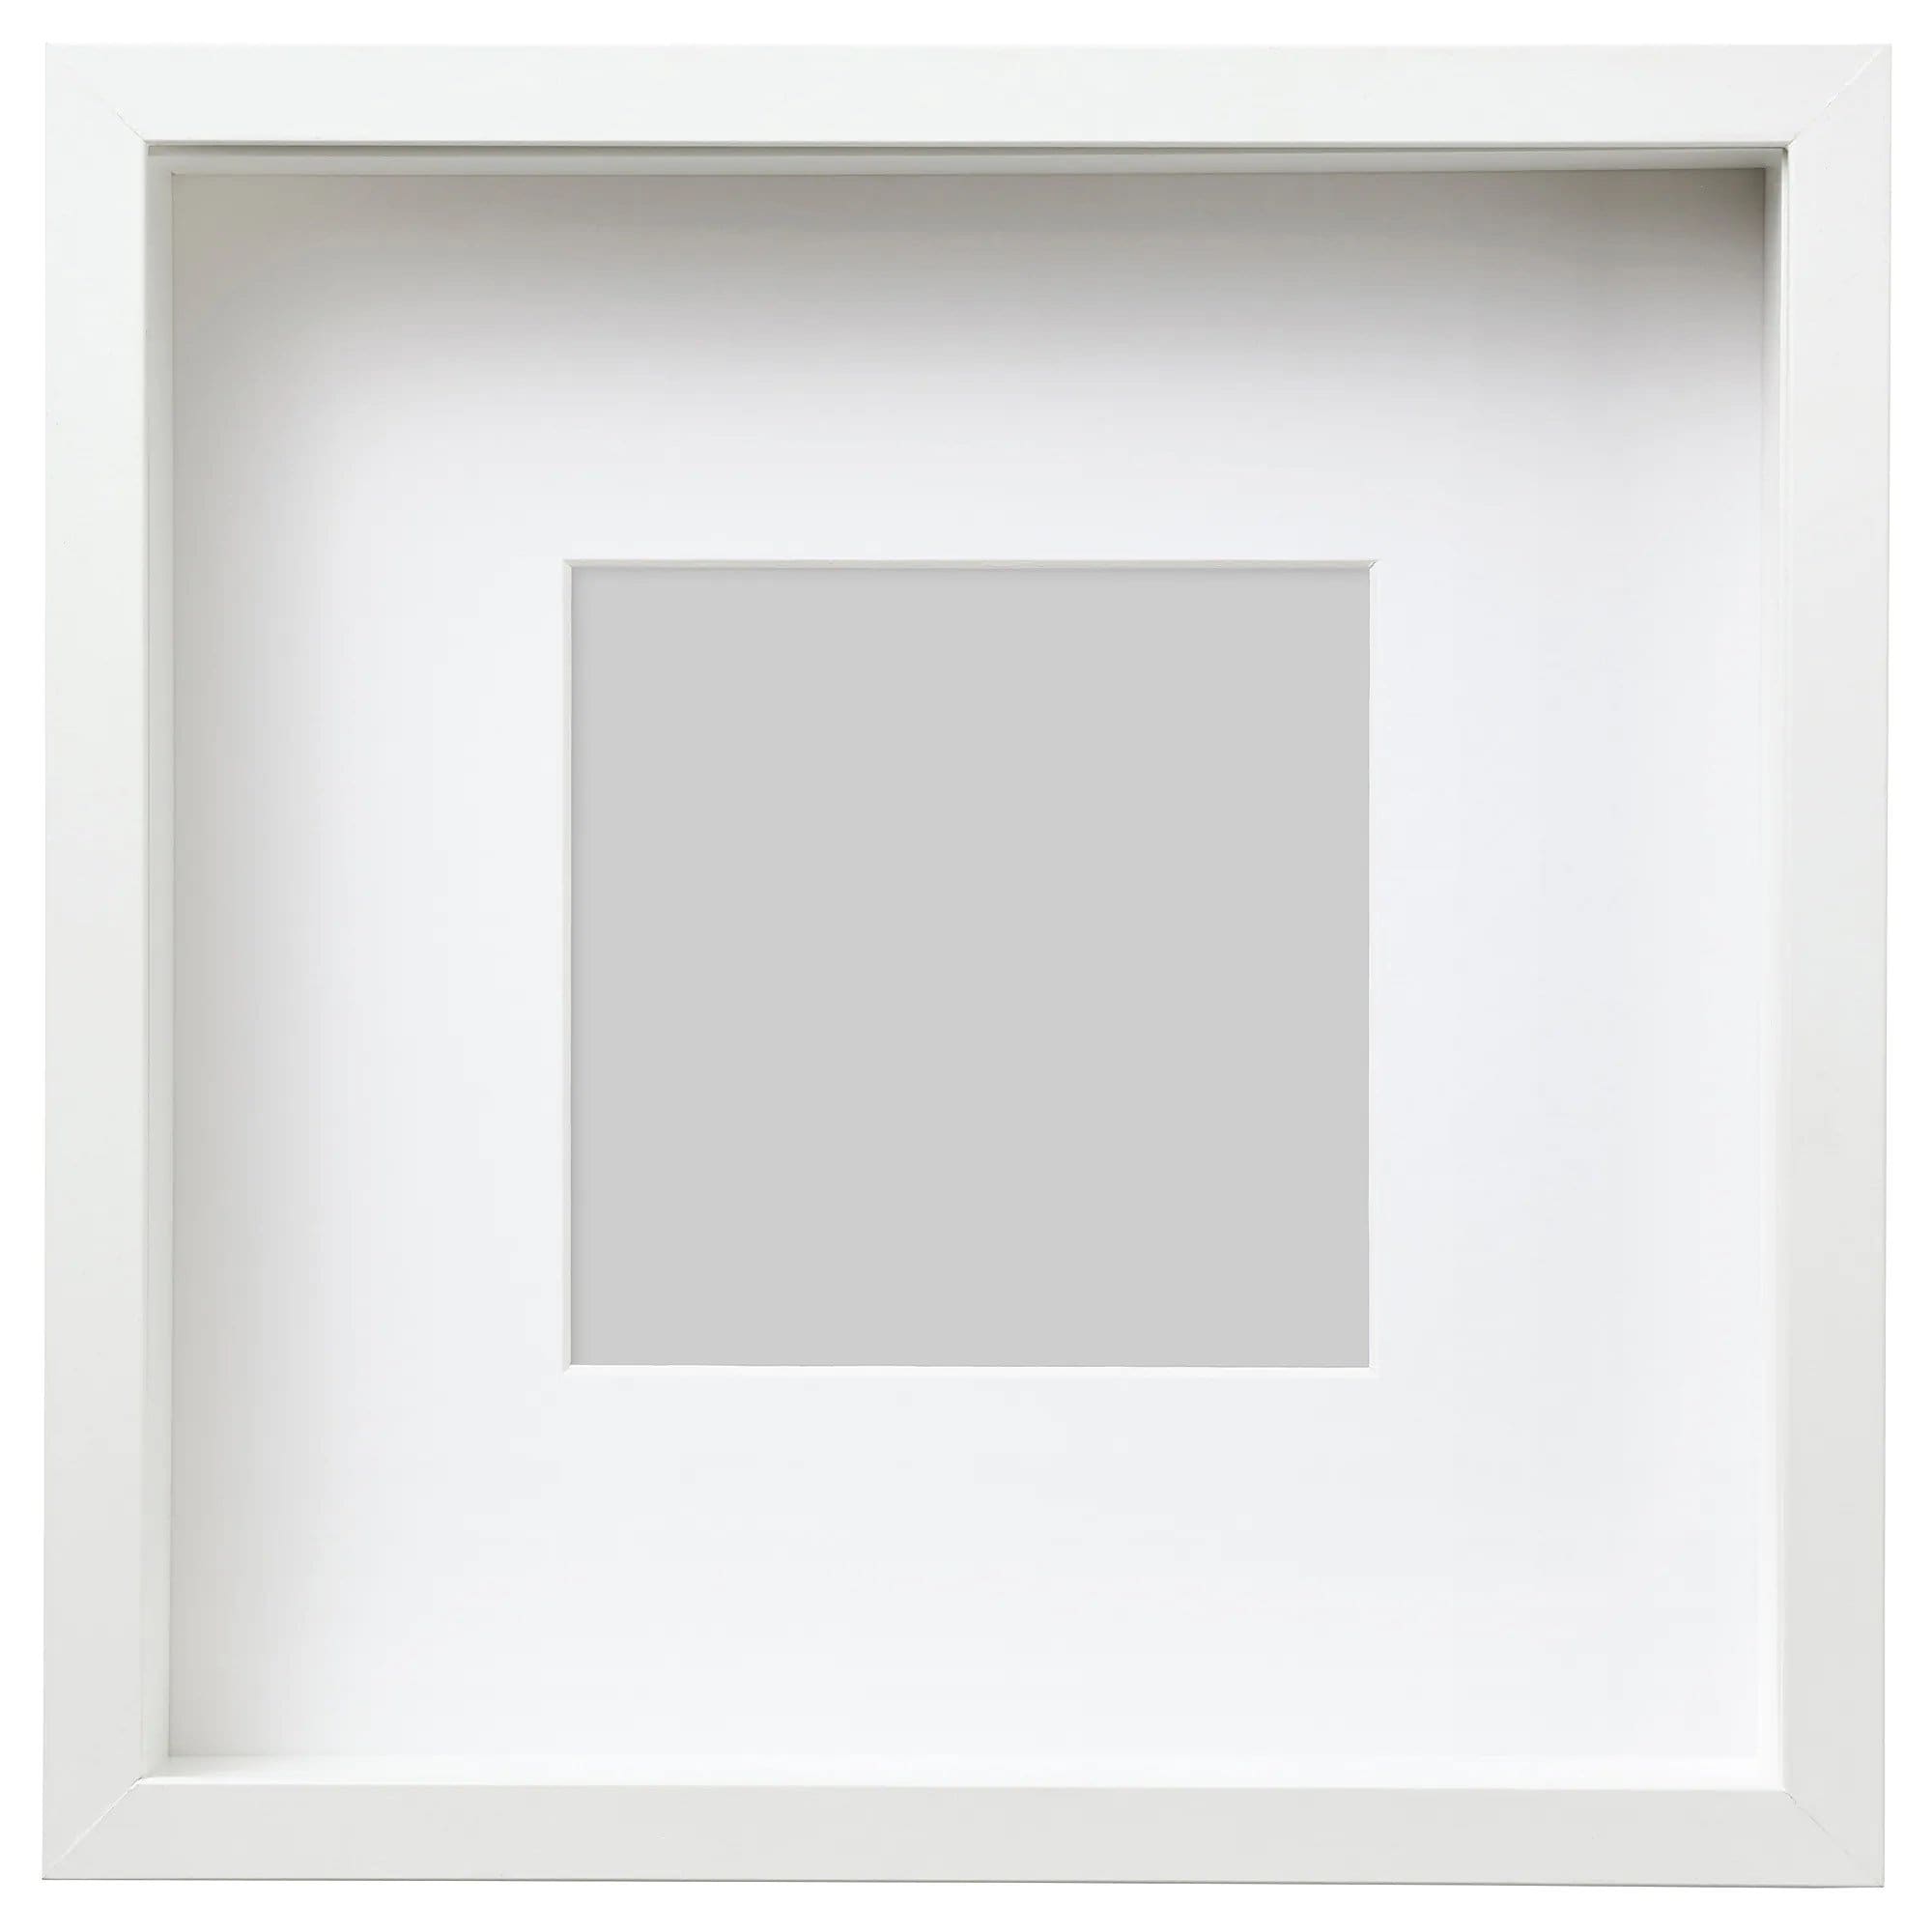 Impresionantes marcos de caja blancos extra profundos internos de 25 cm x  25 cm, perfectos para fotos y manualidades. -  México